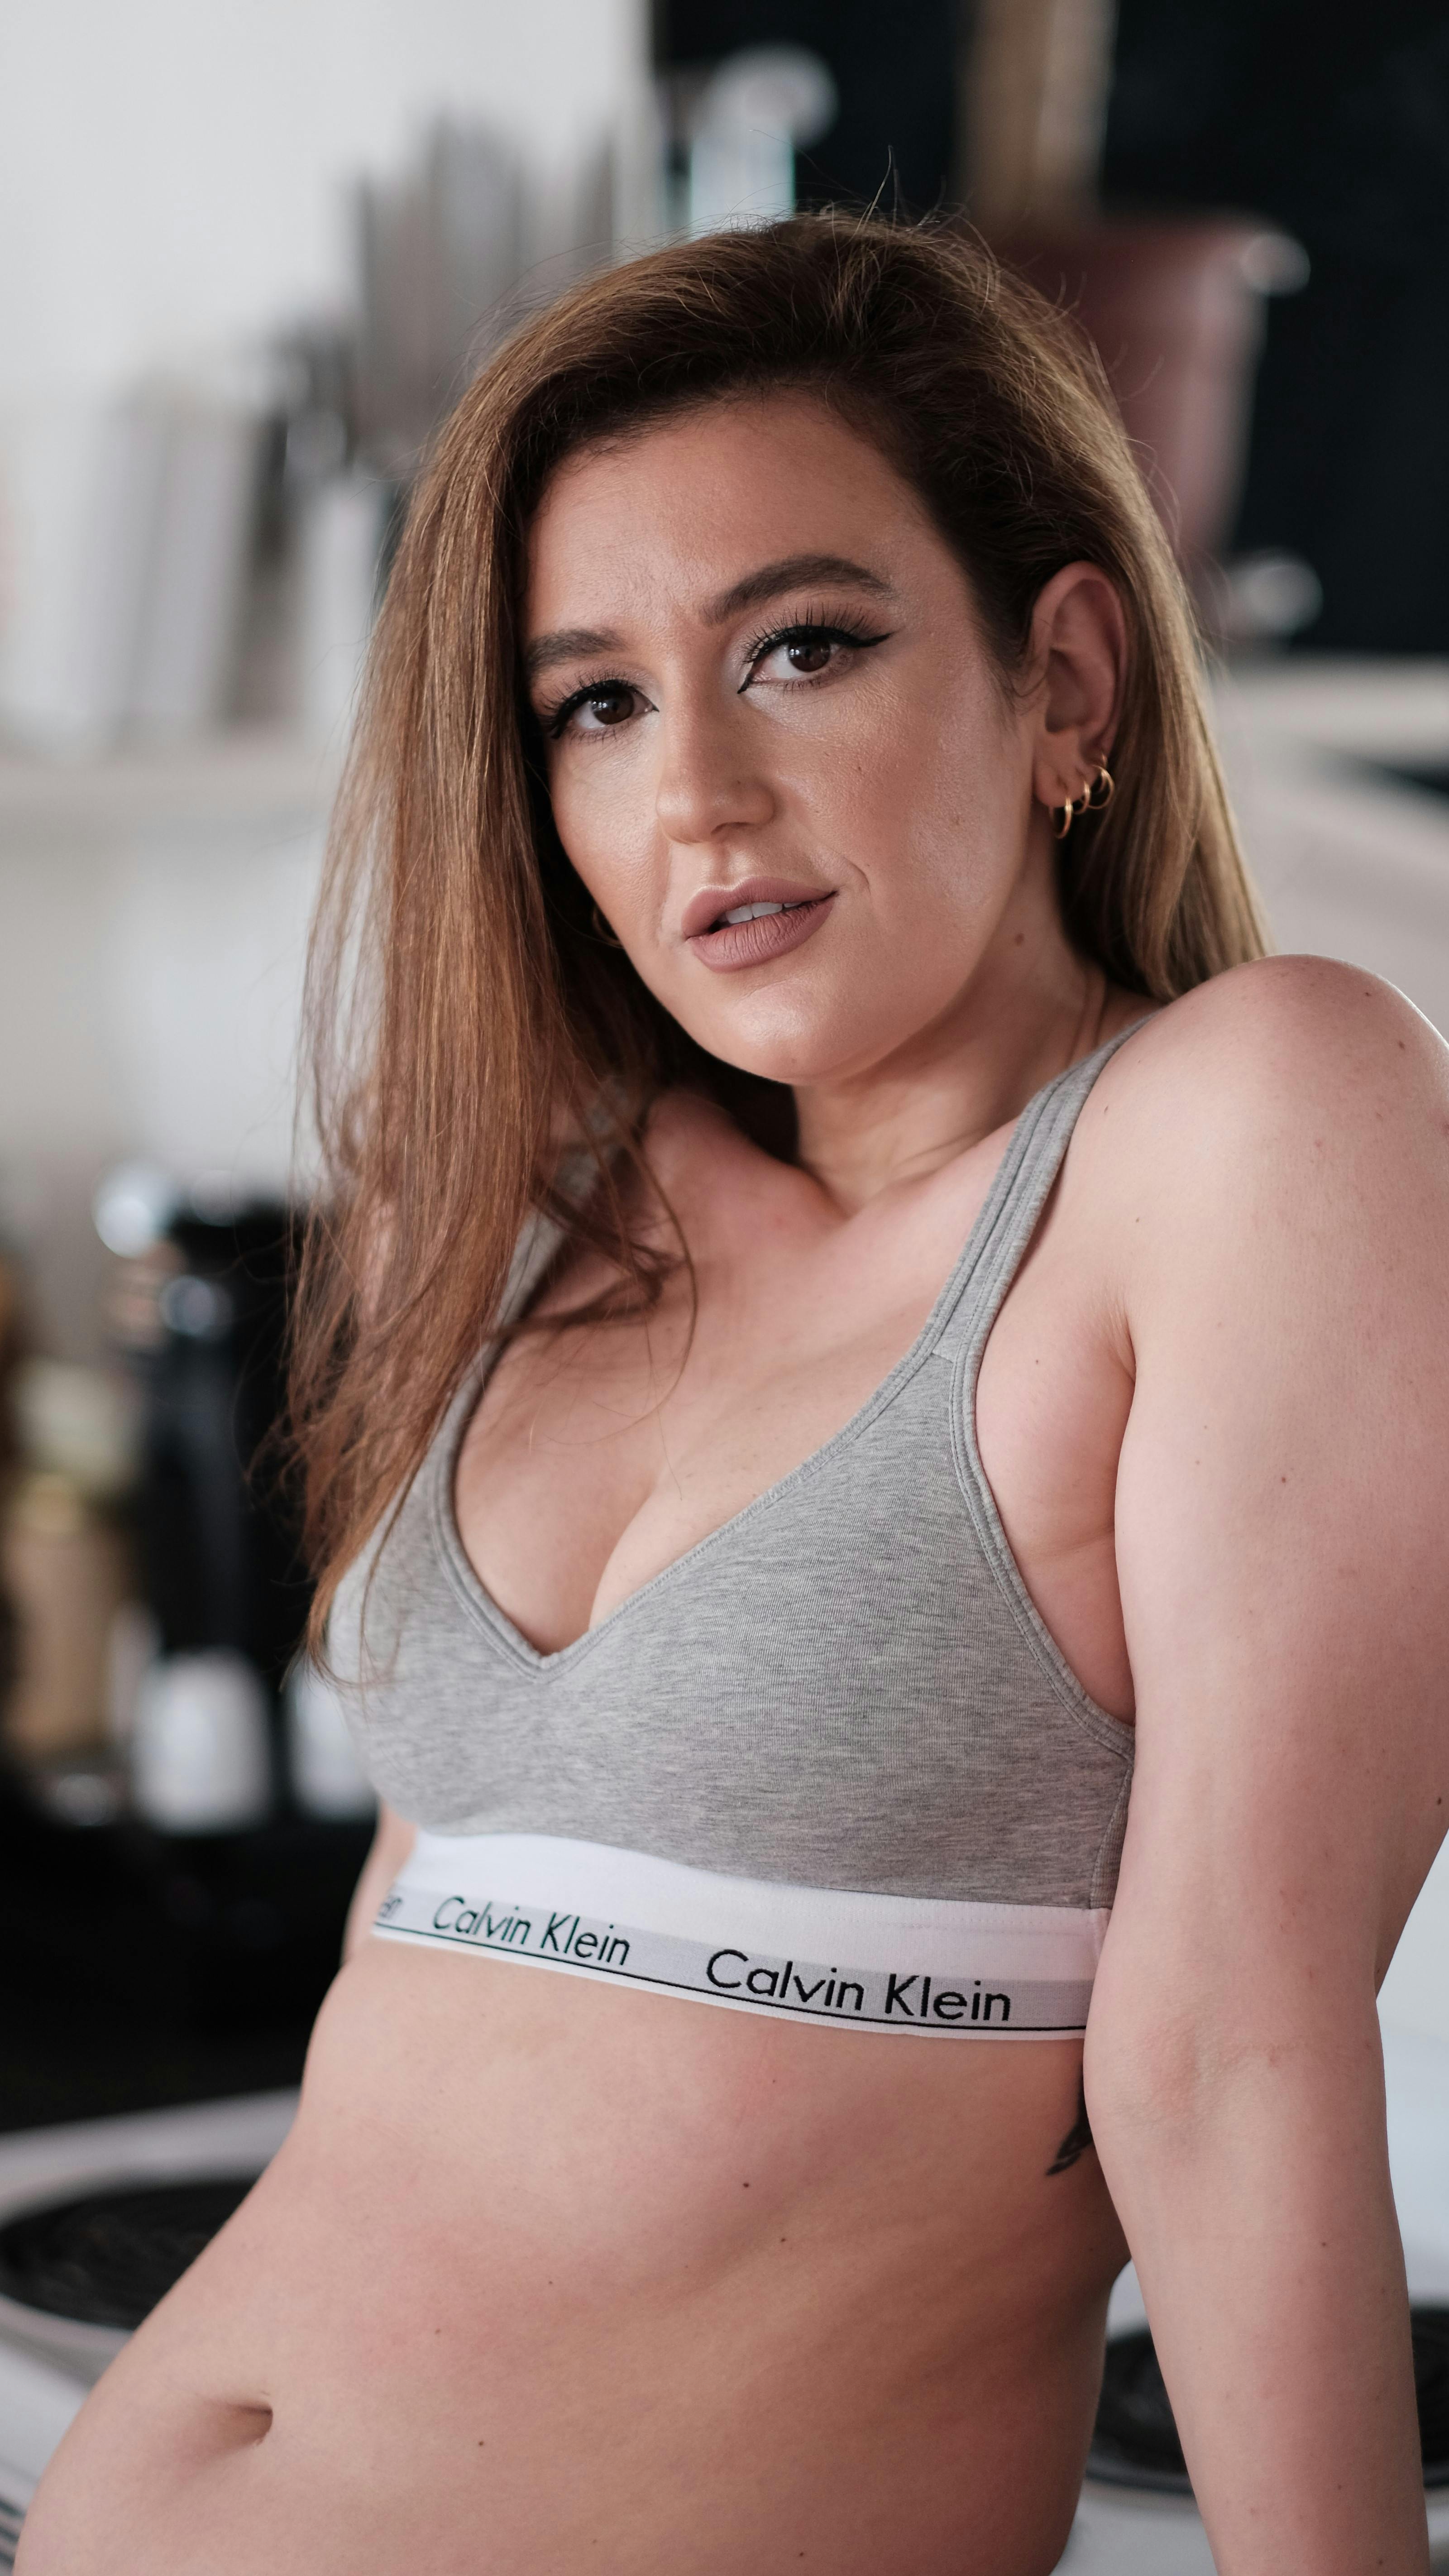 A Woman Wearing a Gray Calvin Klein Bra · Free Stock Photo